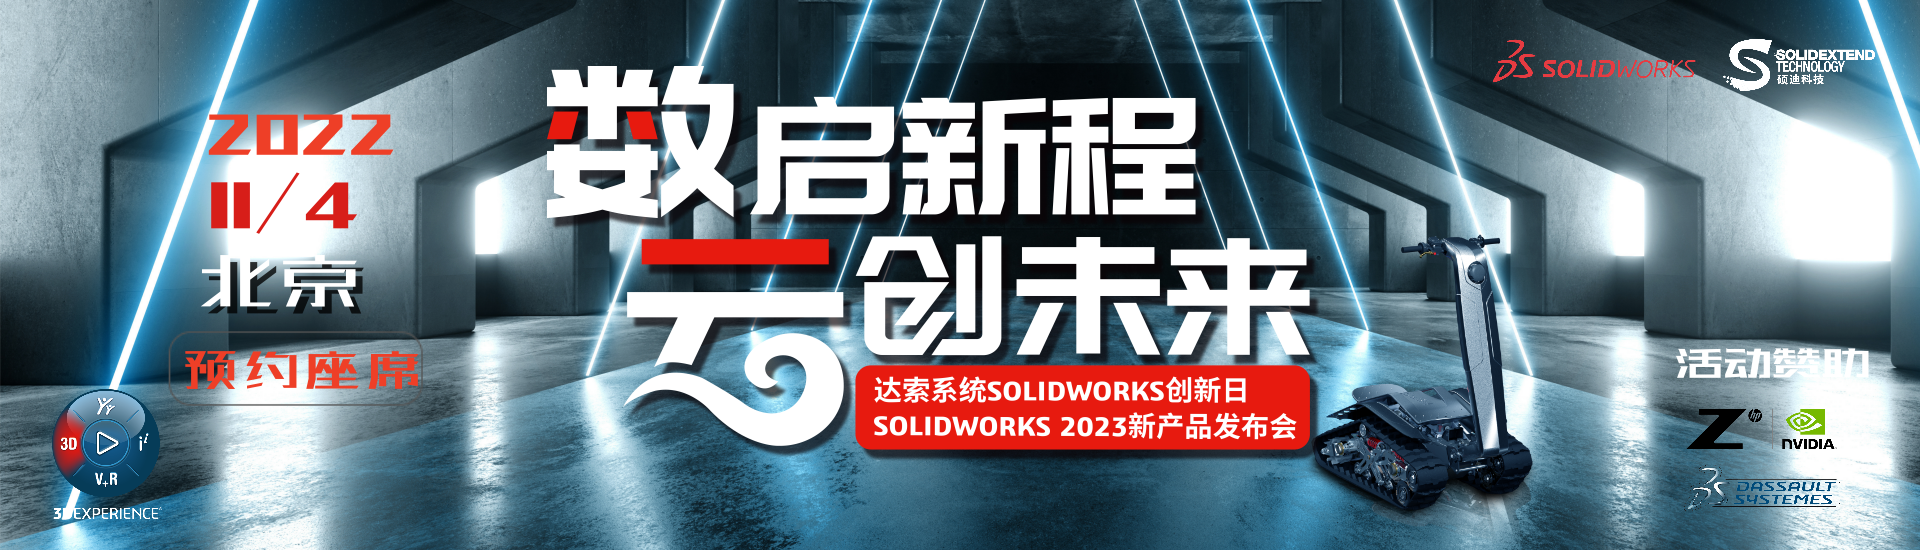 solidworks 2022创新日活动